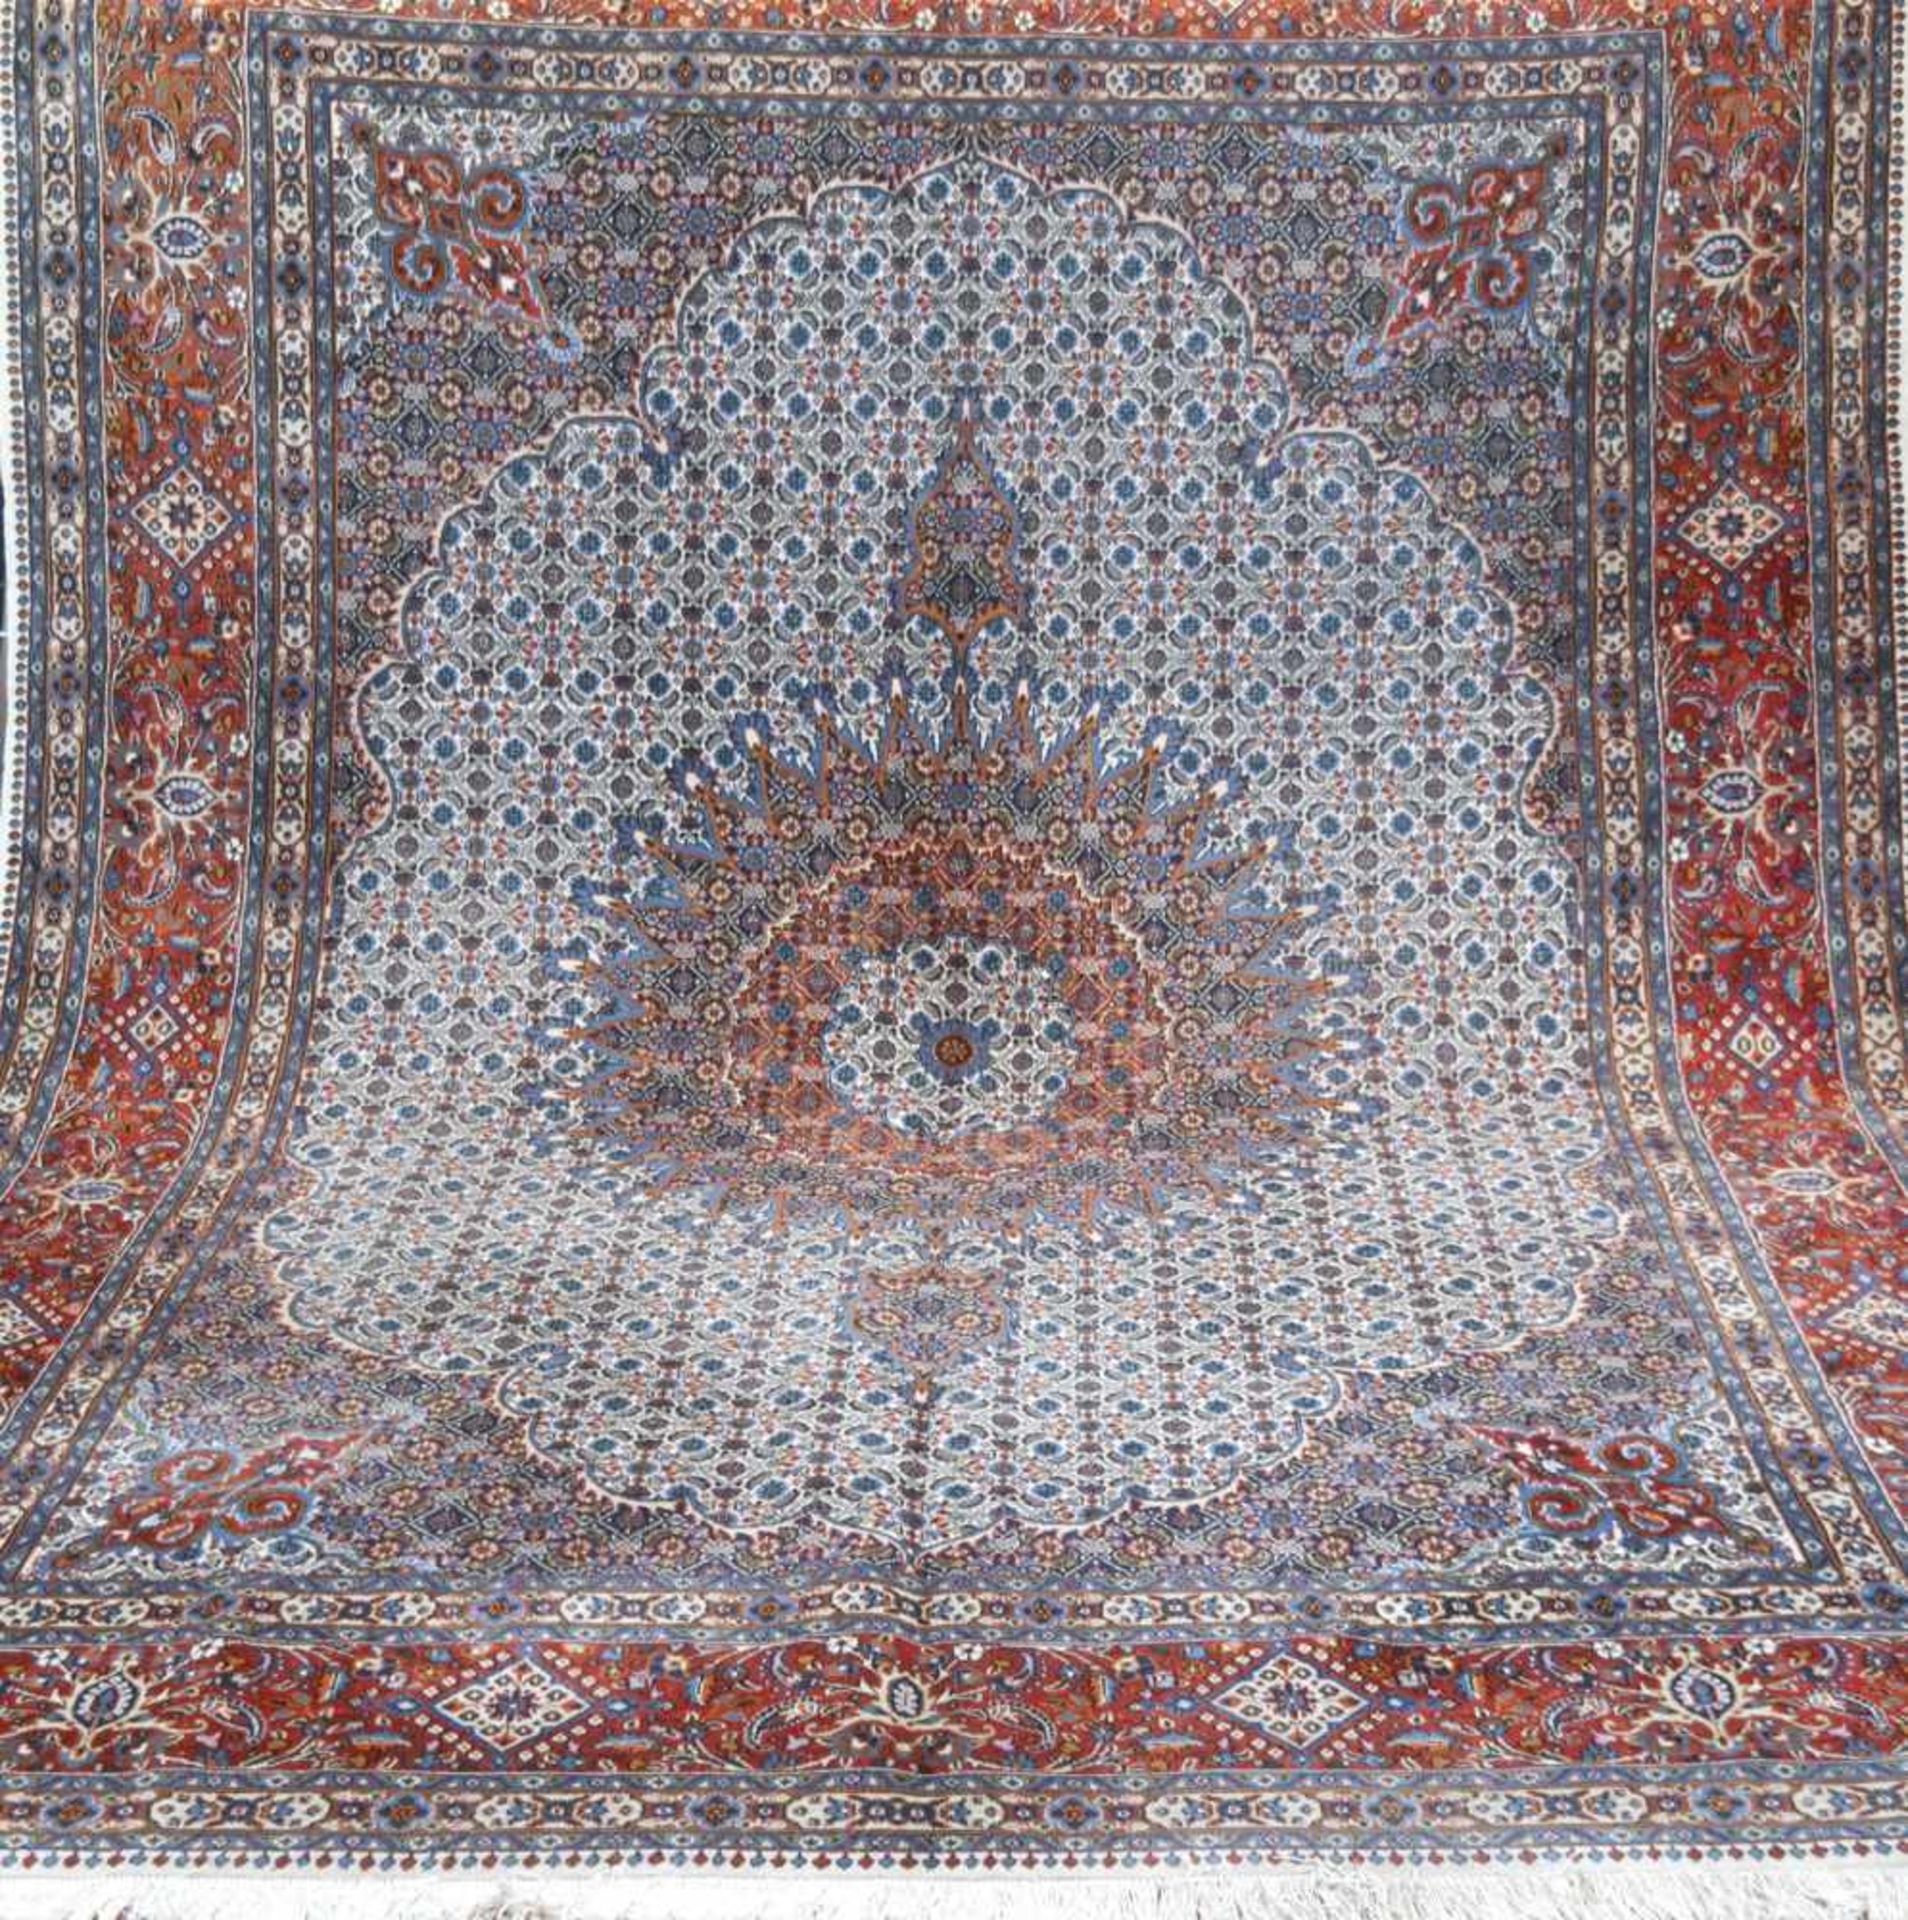 Teppich, Kashmar, Persien, hellgrundig mit Heratizeichnung, mit zentralem Medaillon u.floralen